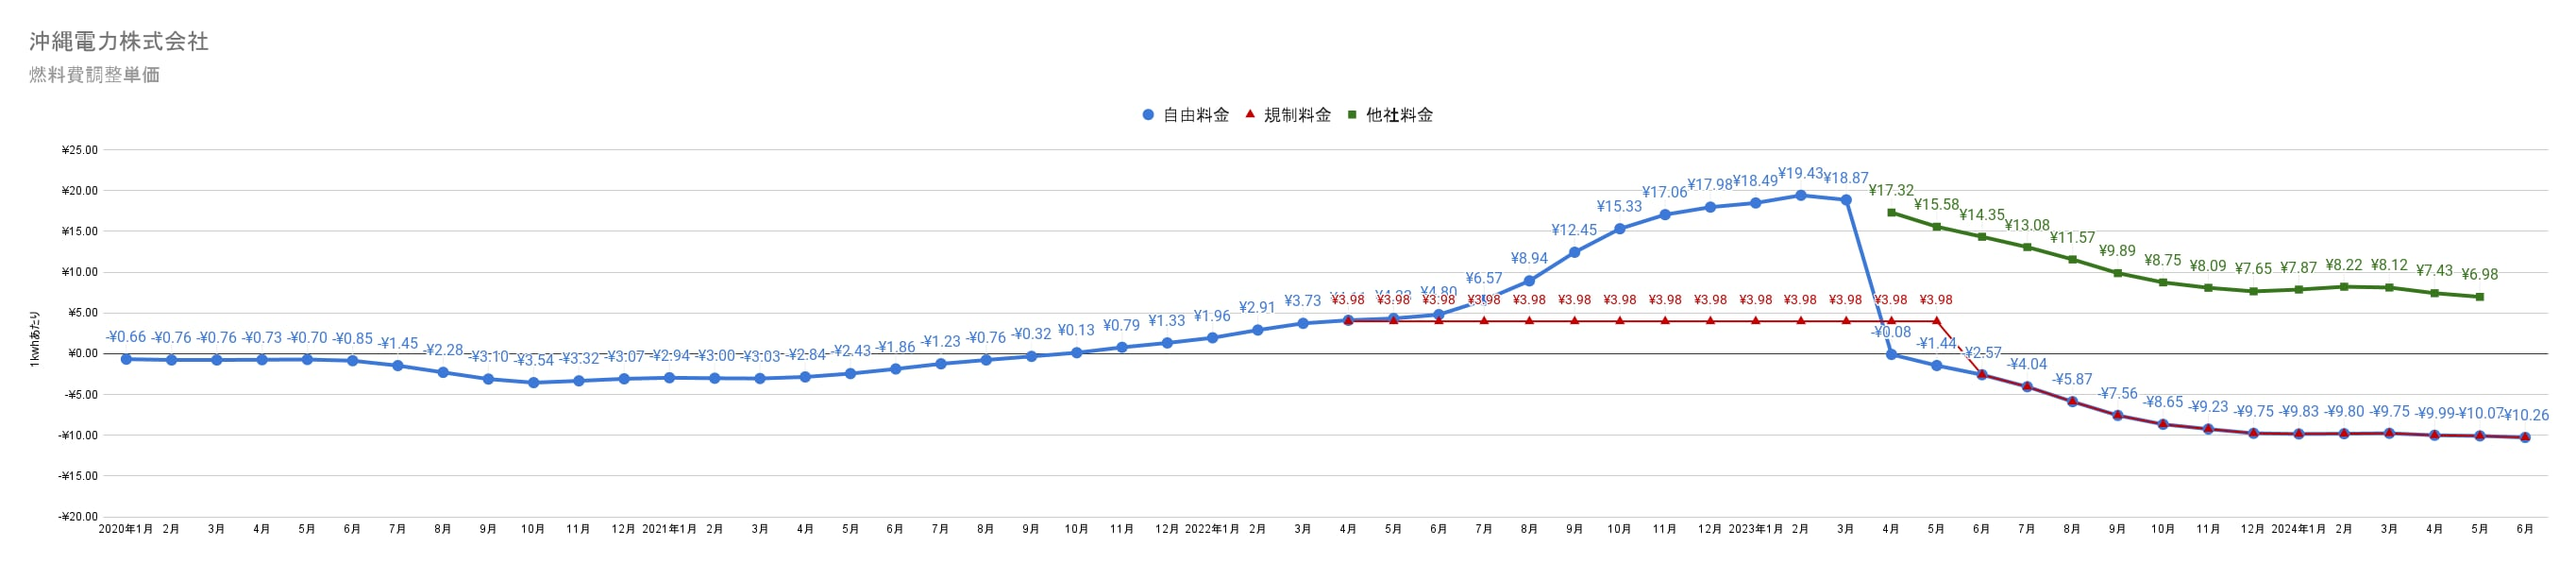 沖縄電力の燃料費調整額単価　過去3年間の推移グラフ